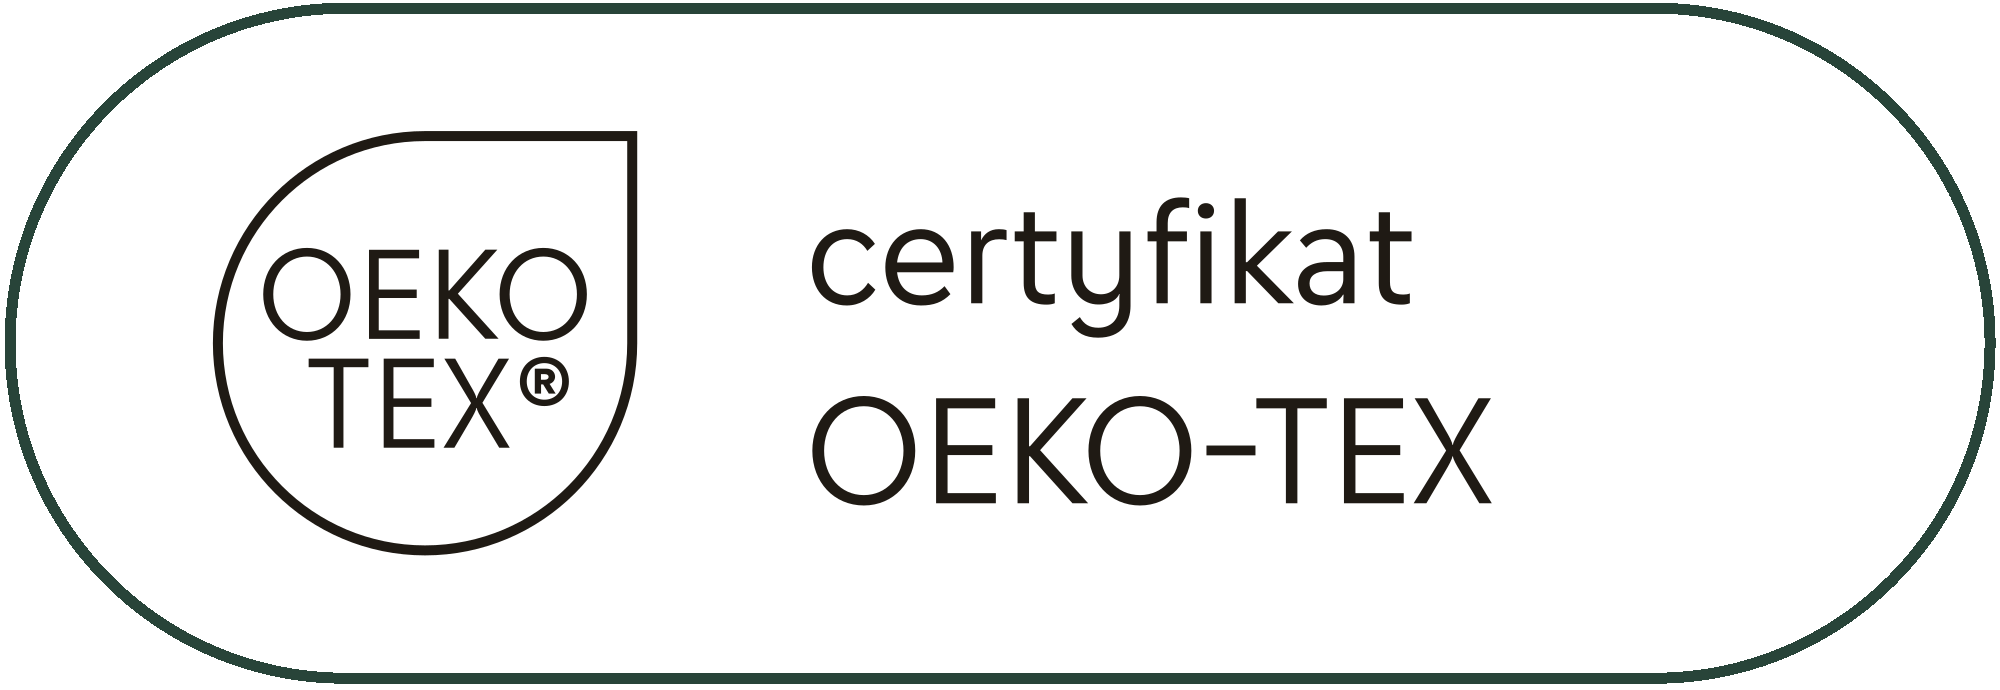 Certyfikat Oeko Tex